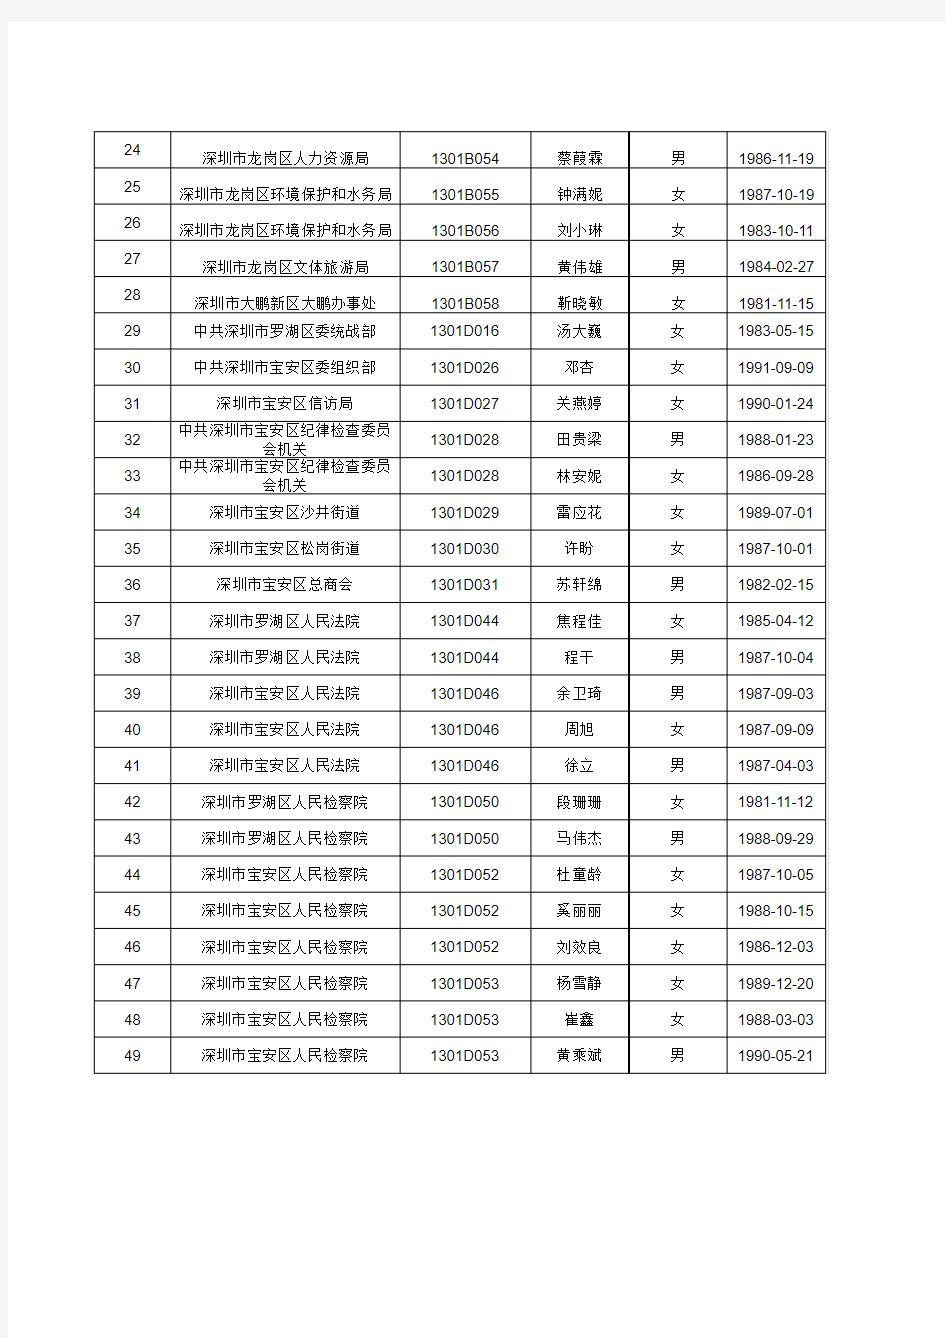 拟聘人员公示名单(五) - 深圳市人力资源和社会保障局